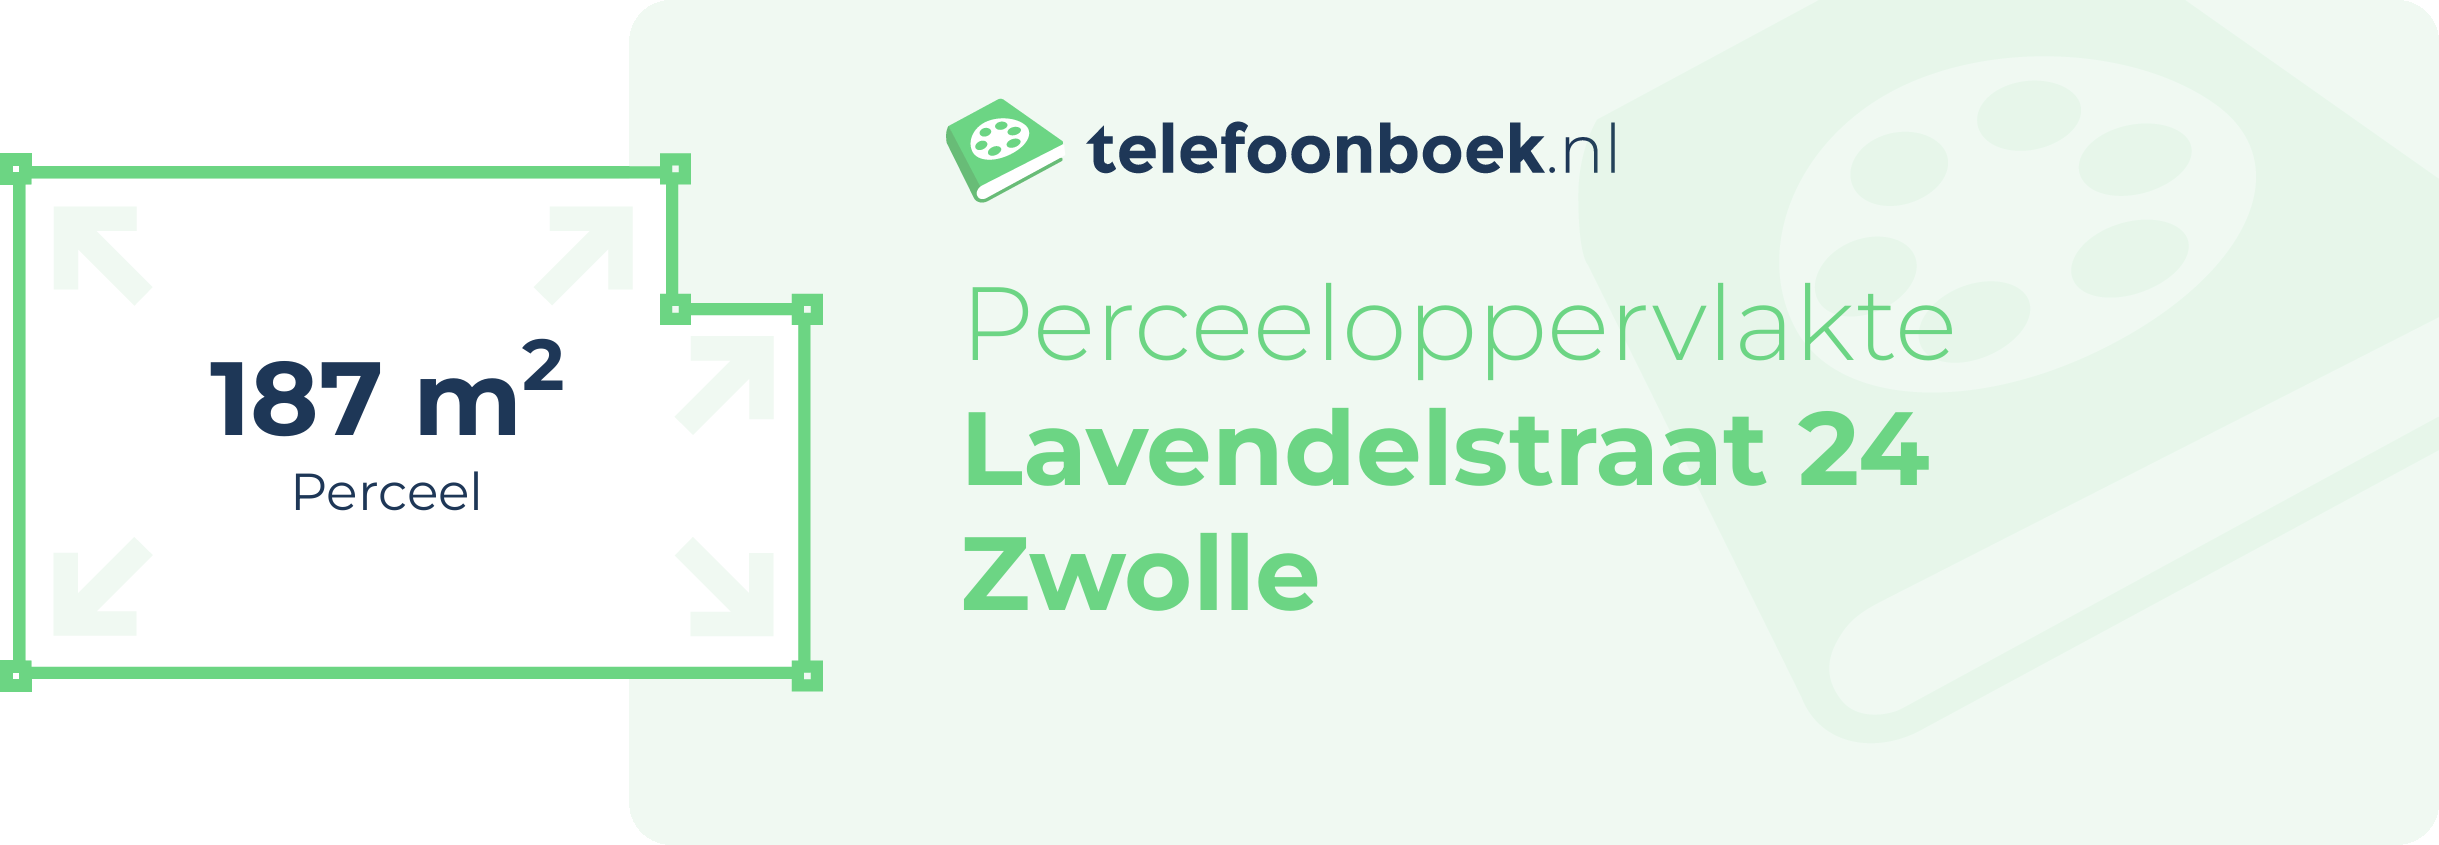 Perceeloppervlakte Lavendelstraat 24 Zwolle